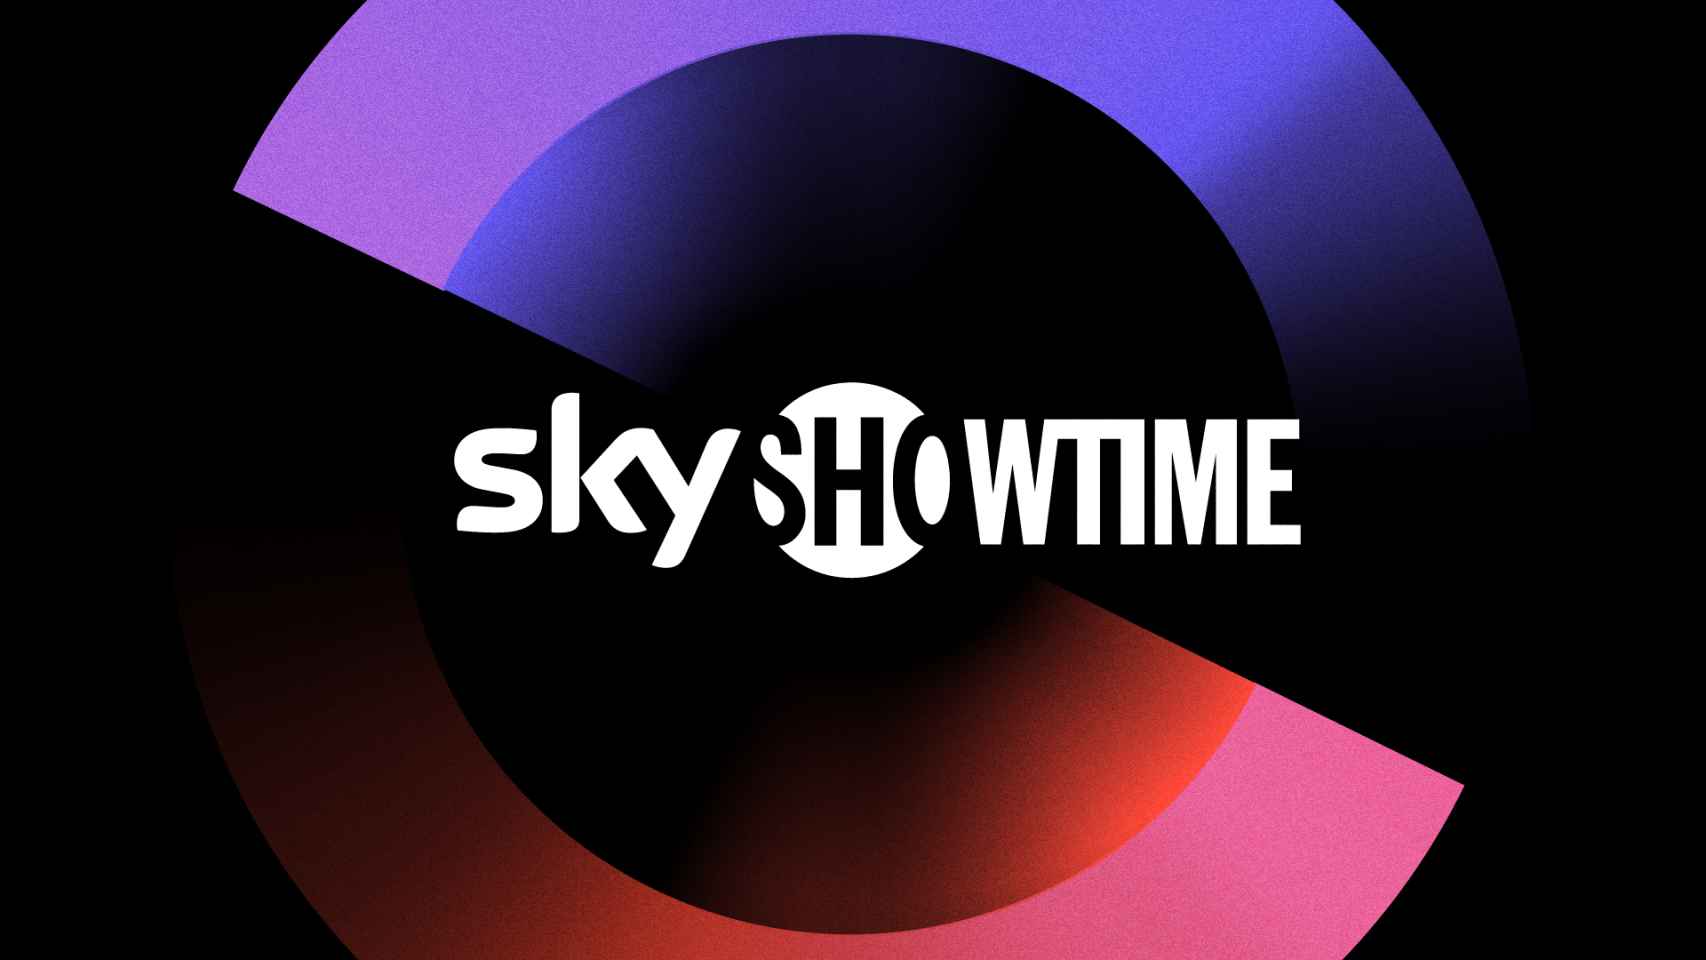 La plataforma SkyShowtime llegará a España en 2022 gracias a Comcast y ViacomCBS.